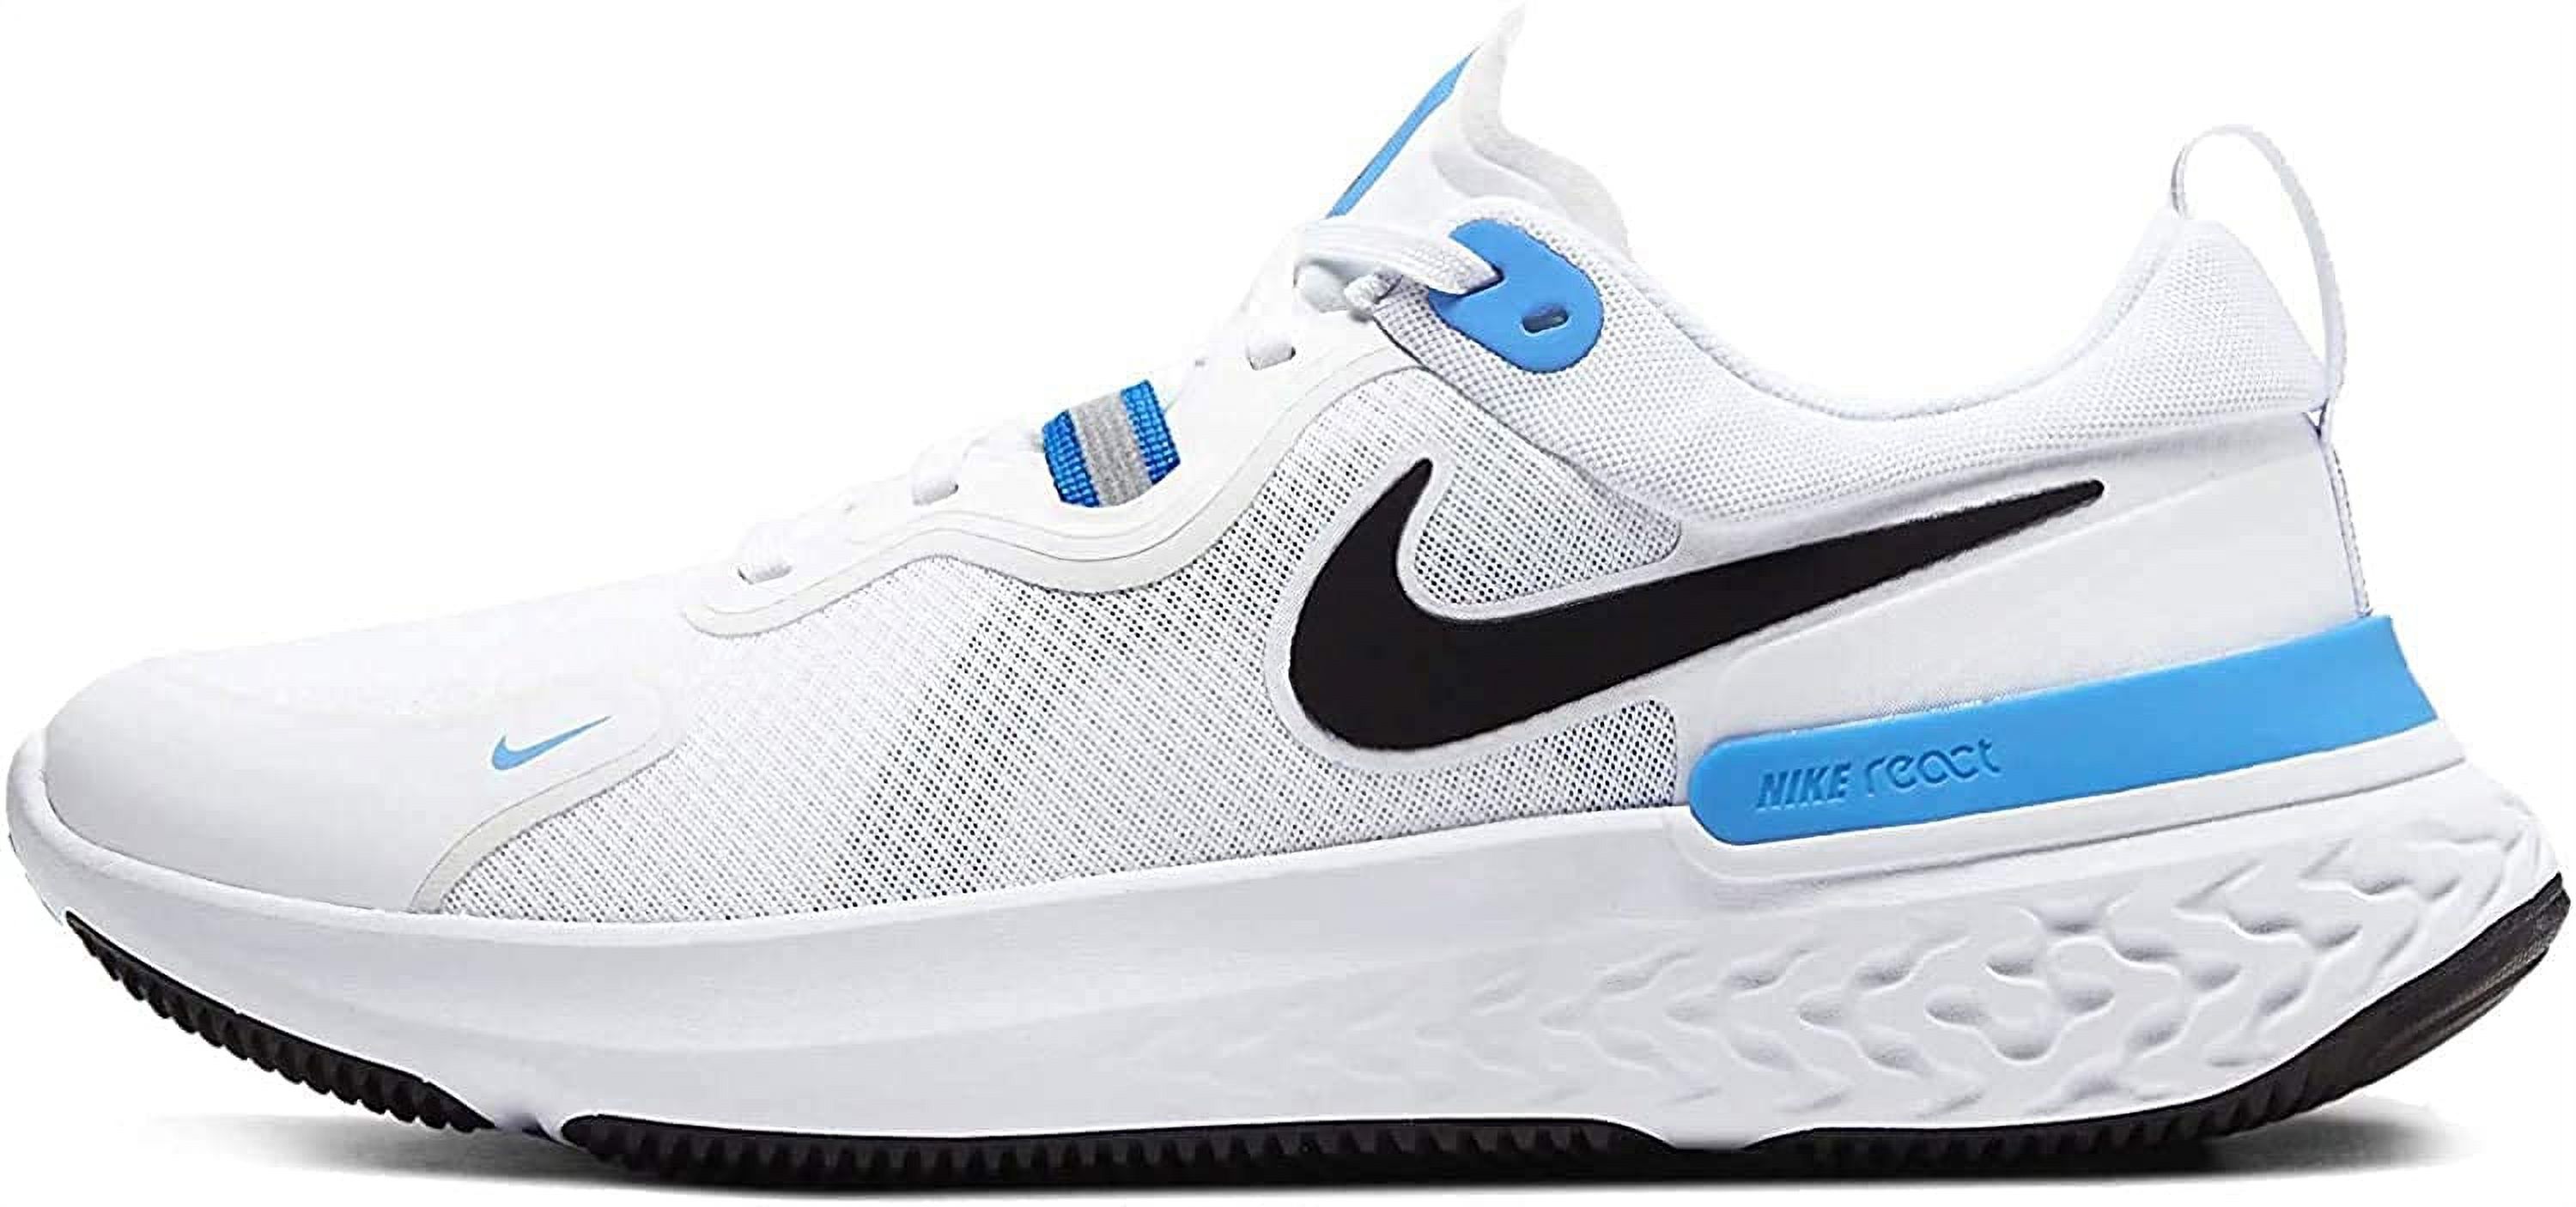 Nike Mens Running Shoe React Miler White  12 US - image 1 of 3